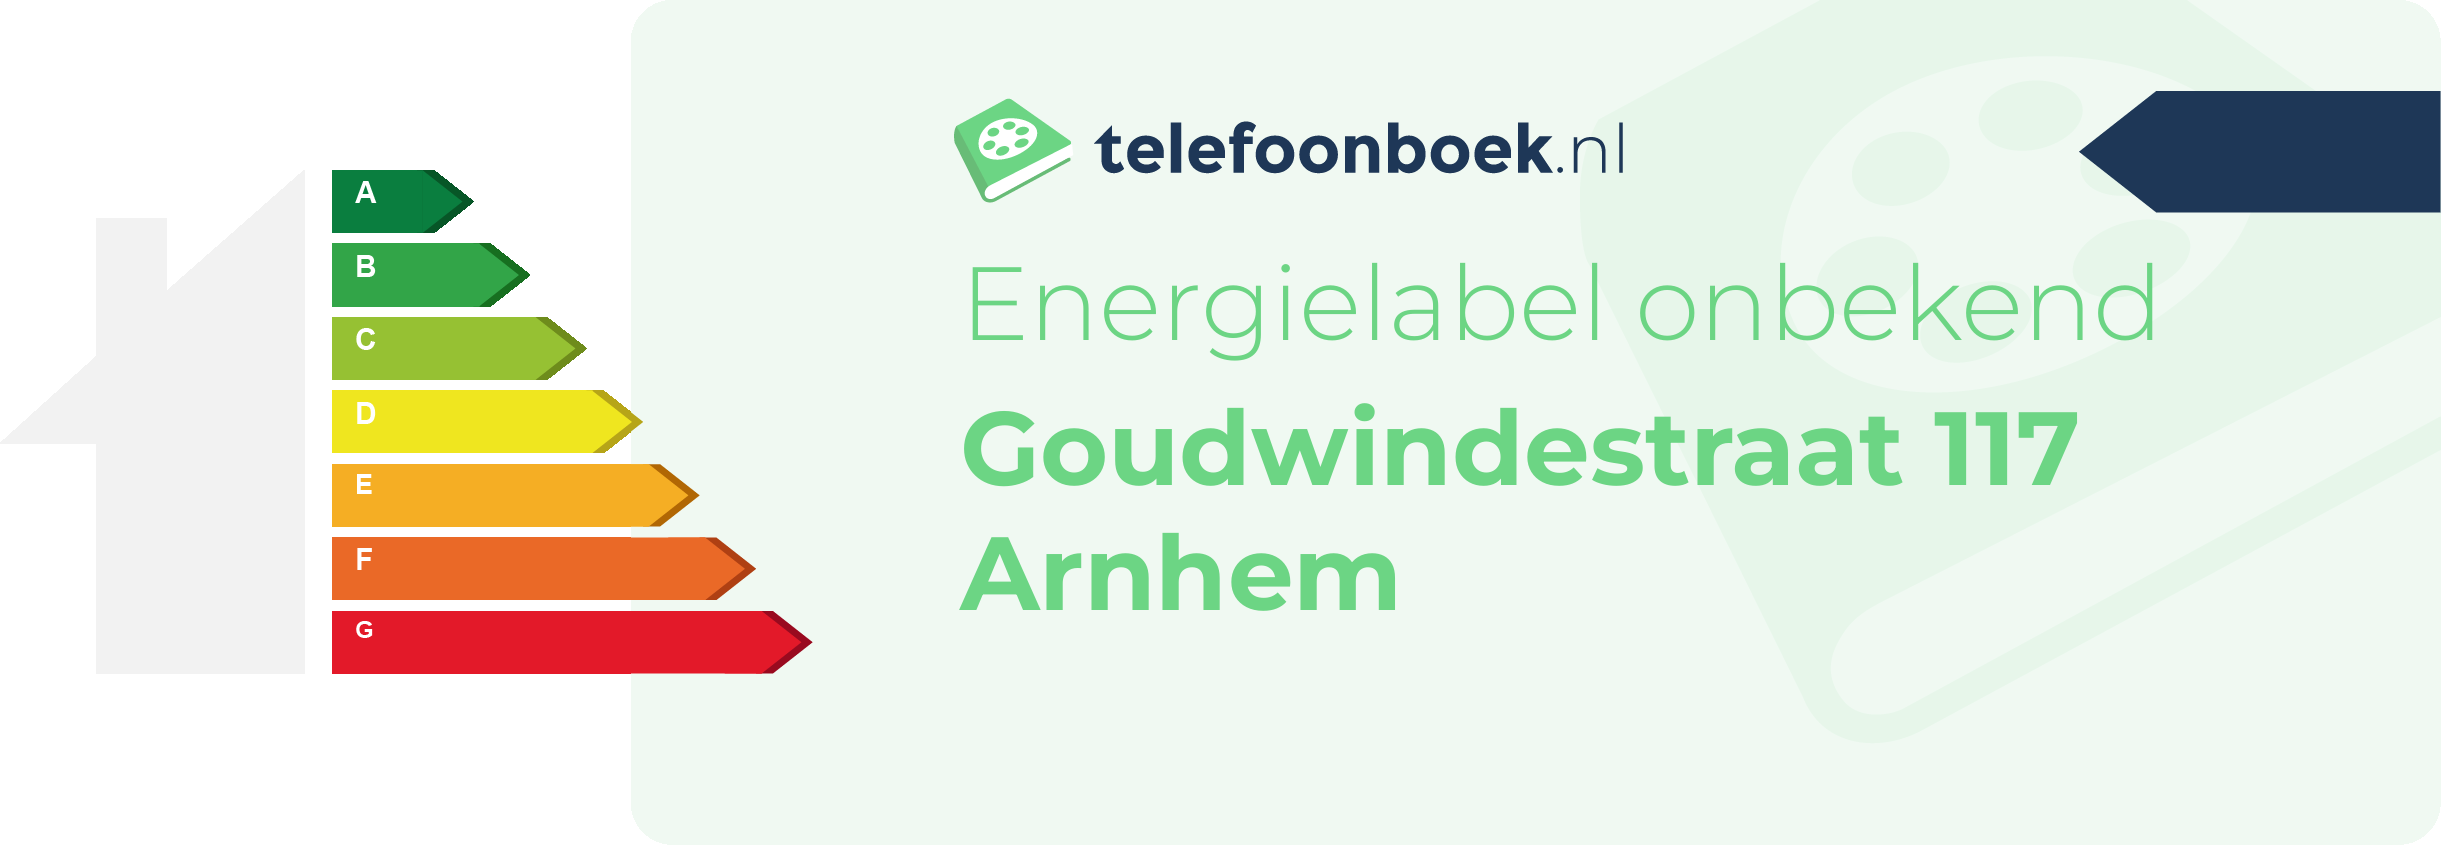 Energielabel Goudwindestraat 117 Arnhem